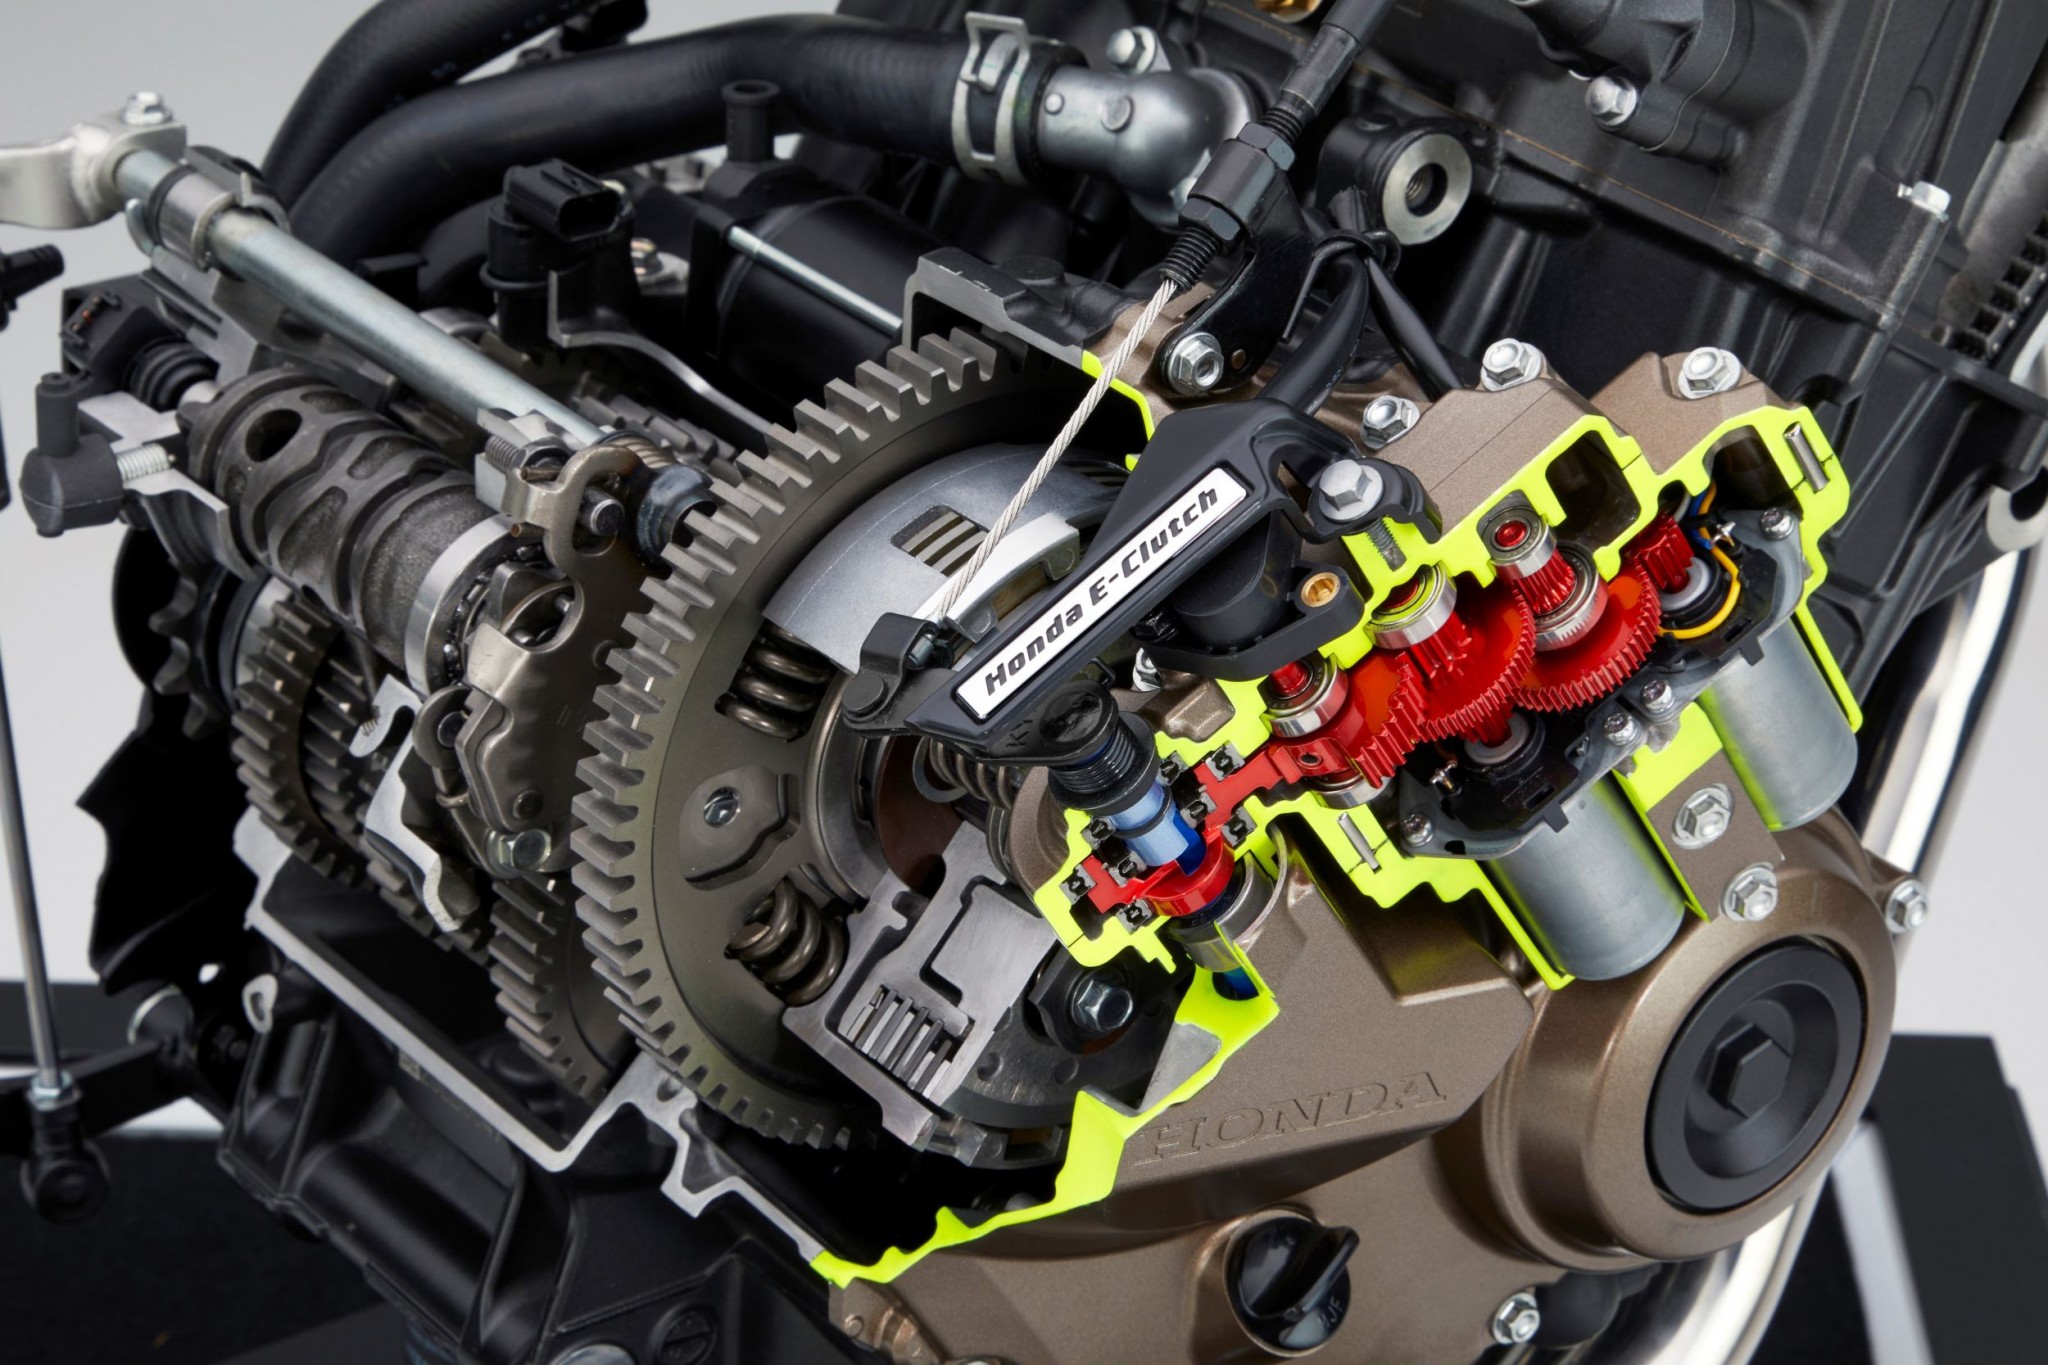 Test elektronske kvačila Honda CBR650R 2024

Honda je nedavno predstavila novu verziju svog popularnog motocikla CBR650R, koji sada dolazi sa elektronskim kvačilom, poznatim kao E-Clutch. Ova inovacija obećava da će olakšati vožnju omogućavajući vozačima da menjaju brzine bez potrebe za ručnim korišćenjem kvačila. 

Elektronsko kvačilo funkcioniše tako što automatski reguliše pritisak potreban za aktiviranje kvačila, što omogućava glatke promene brzina bez prekida u isporuci snage. Ovo je posebno korisno pri vožnji u gradu, gde česte promene brzina mogu biti naporne i otežavaju koncentraciju na saobraćaj.

Testiranje ovog sistema pokazalo je da E-Clutch ne samo da olakšava upravljanje motociklom, već i povećava sigurnost vožnje. Vozači mogu da se fokusiraju na okolinu bez brige o mehaničkim aspektima vožnje, što je posebno važno za manje iskusne vozače.

Honda CBR650R sa elektronskim kvačilom biće dostupna na tržištu od 2024. godine i očekuje se da će privući veliki broj kupaca, kako iskusnih tako i onih koji tek ulaze u svet motociklizma. Ovaj model predstavlja značajan korak napred u tehnologiji motocikala i potencijalno postavlja nove standarde u industriji. - Слика 3